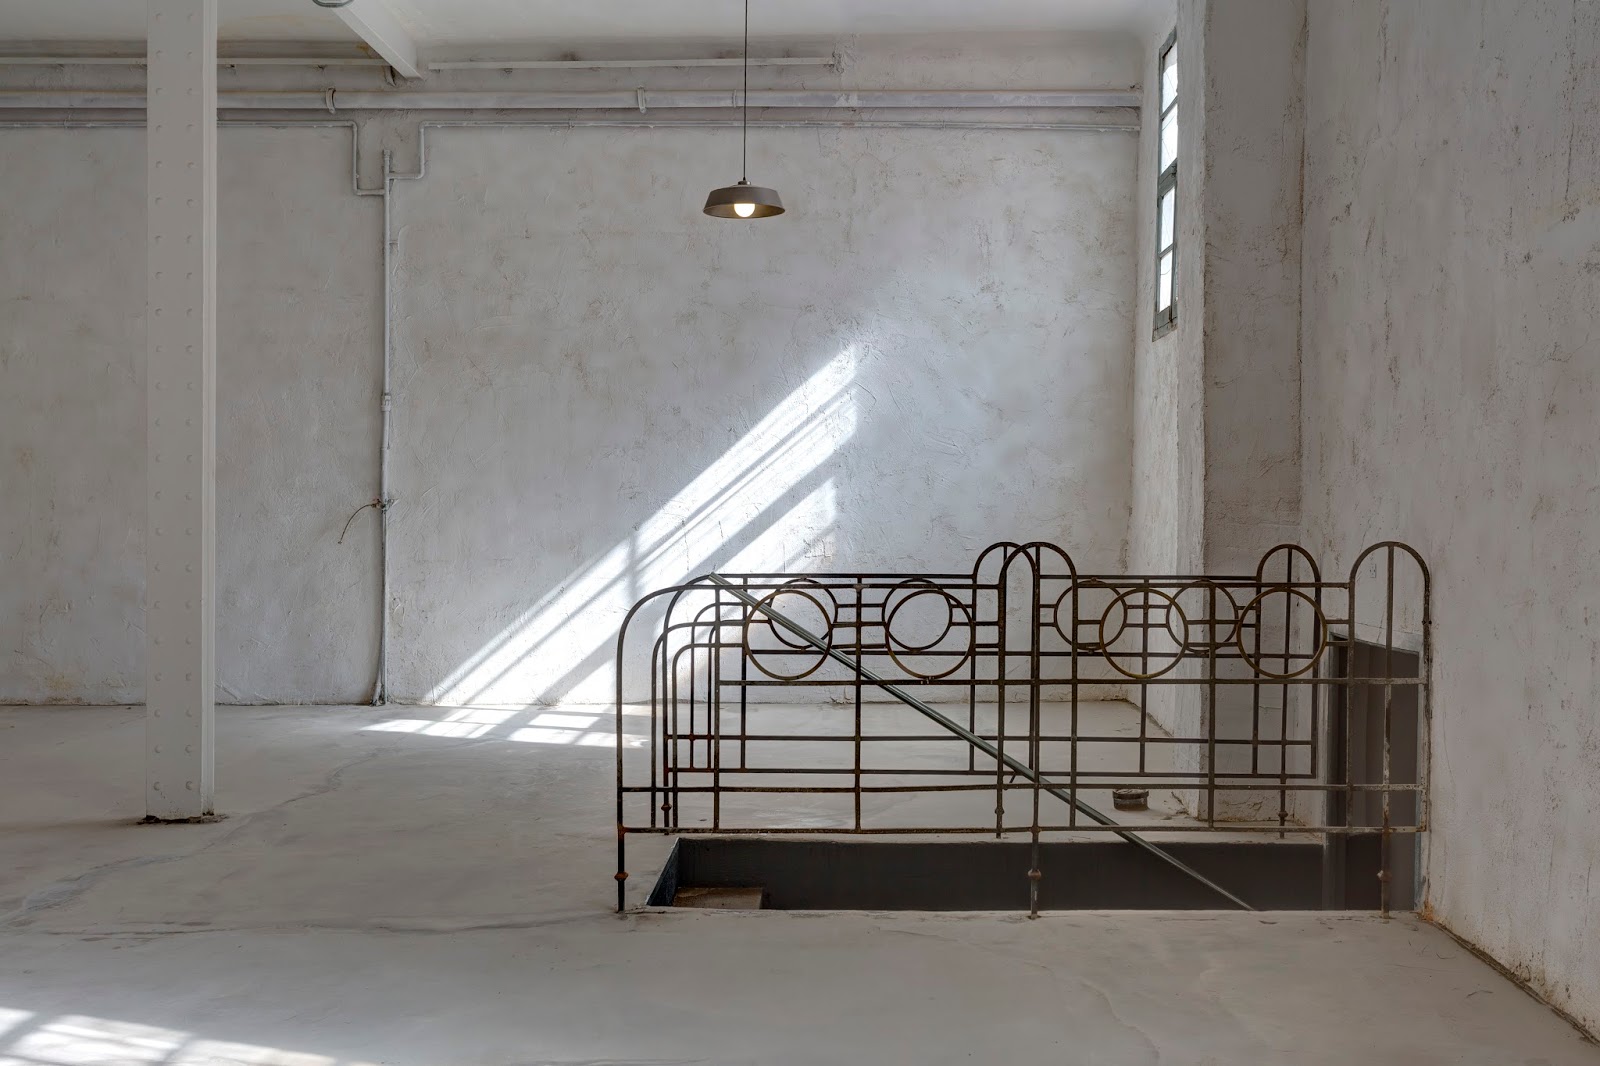 ¿Imaginas un plan mejor" Singulares Inventory Room en Madrid